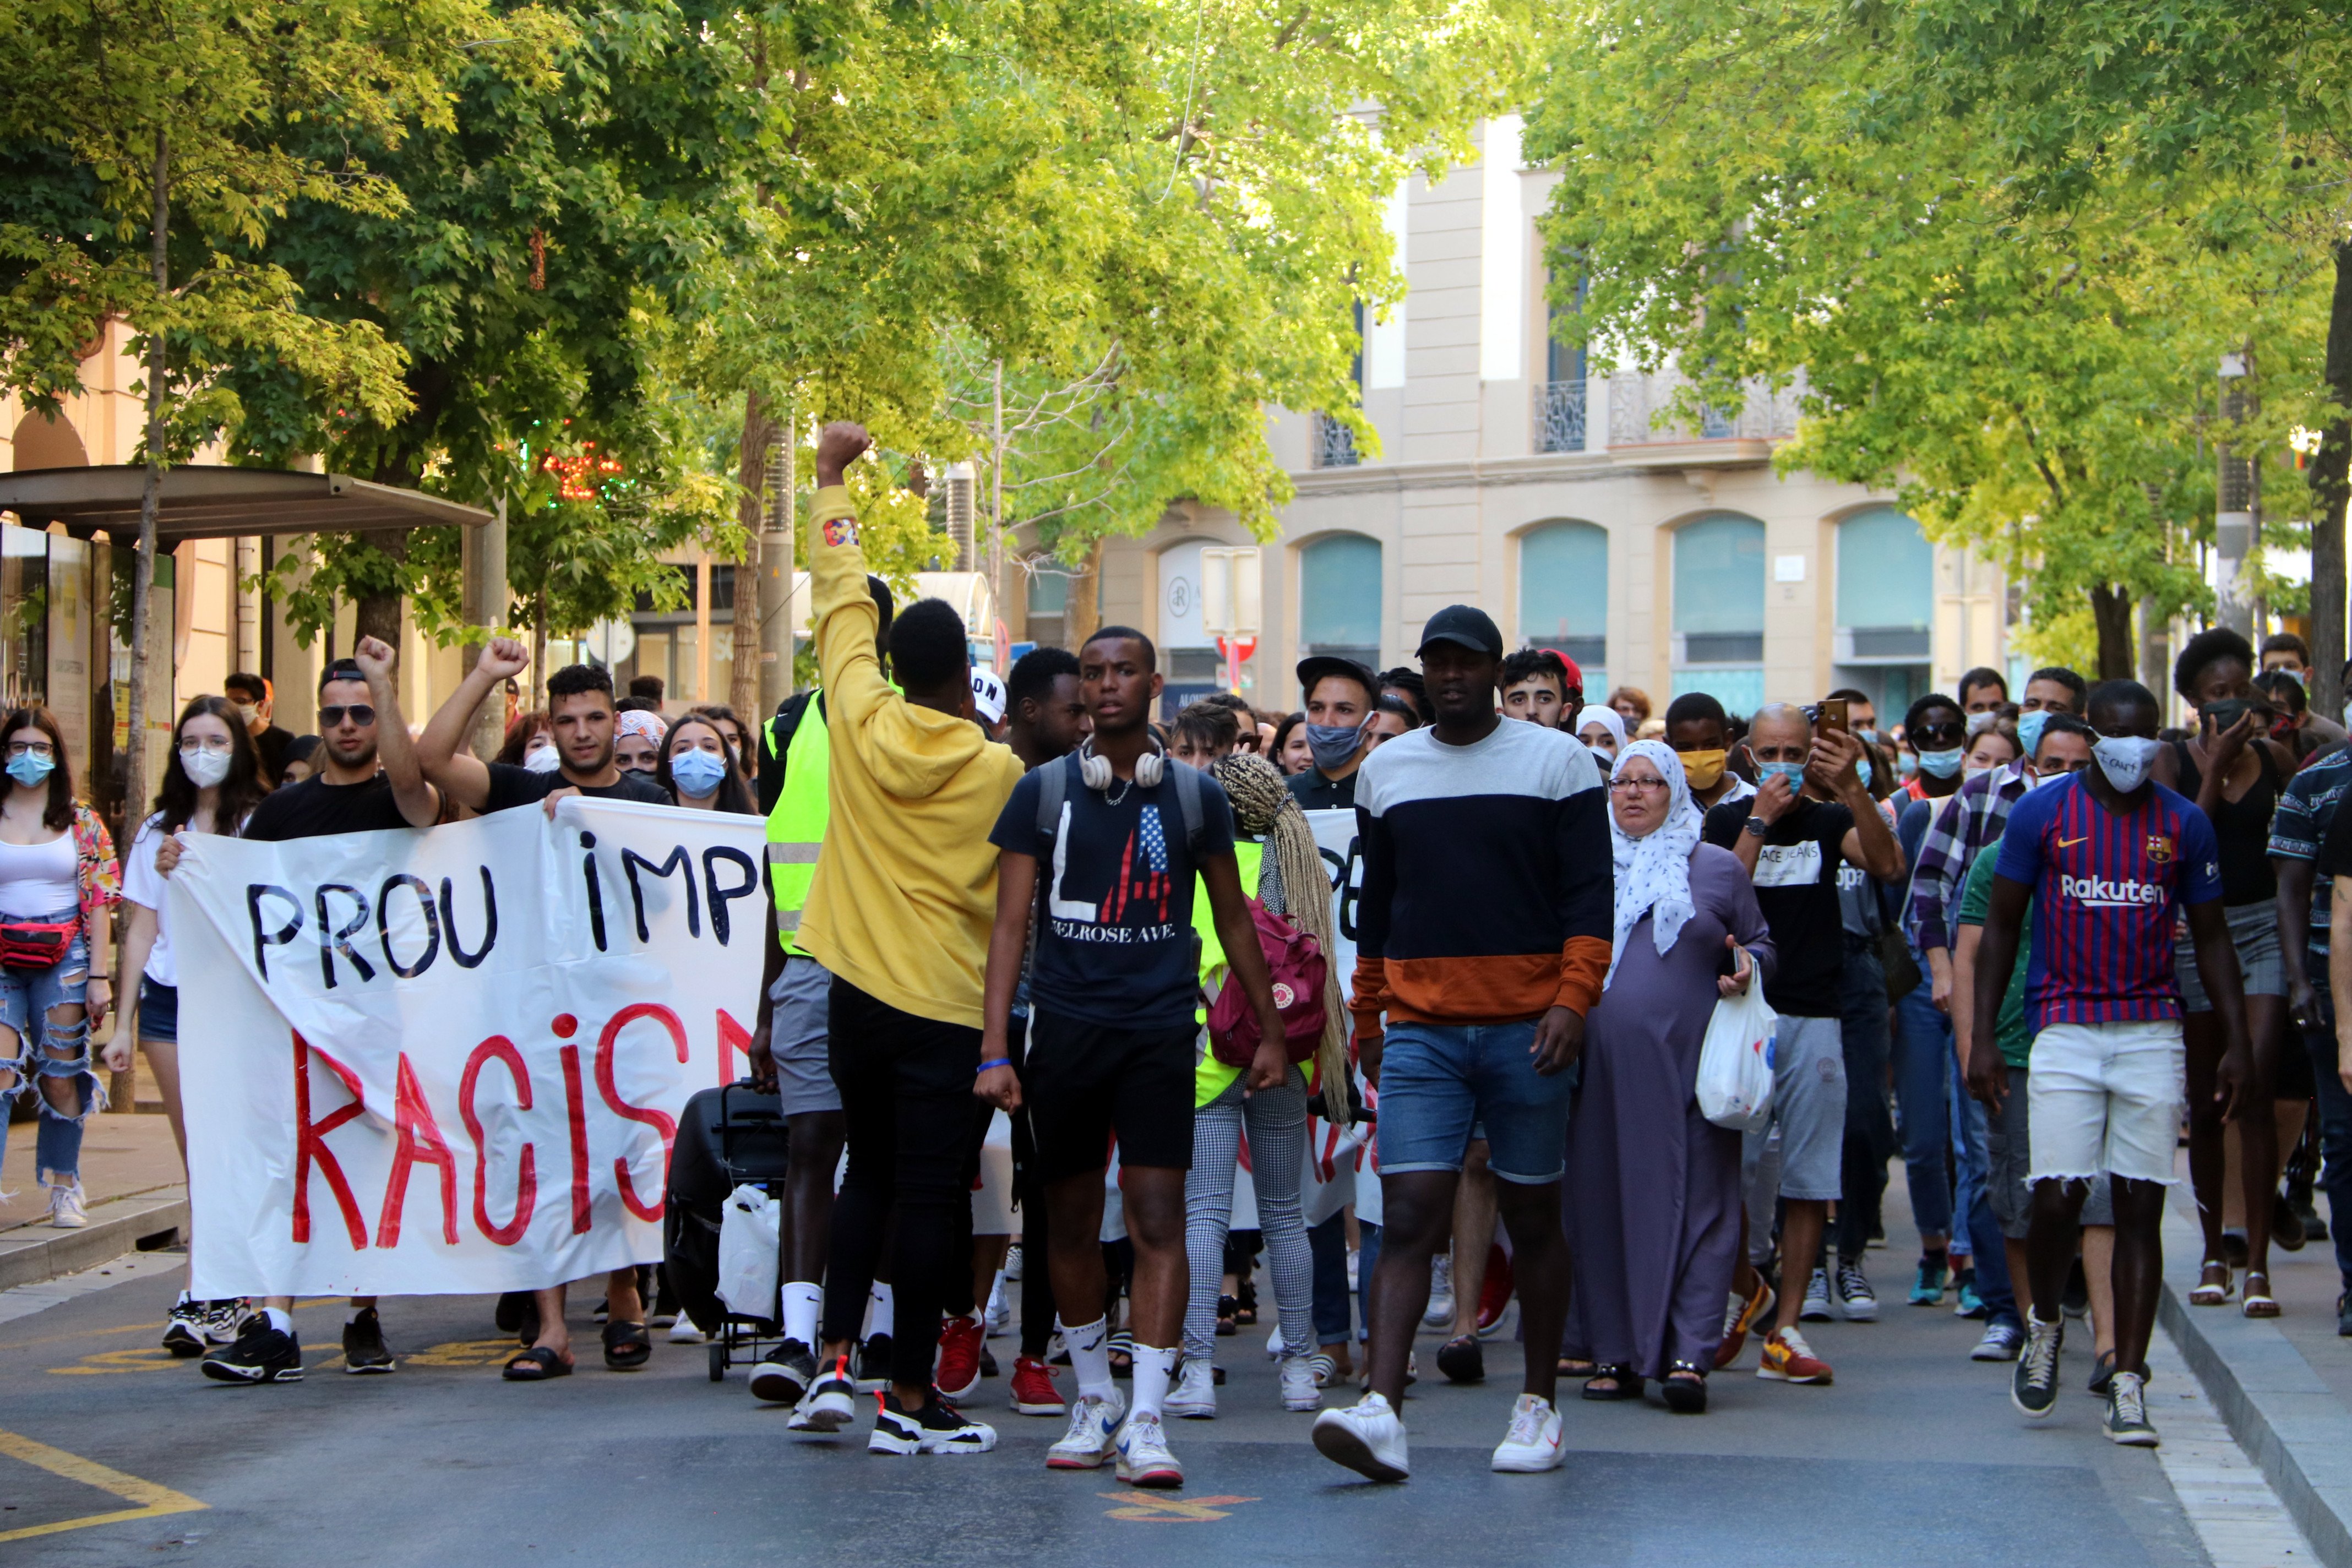 Massiva protesta contra l'agressió racista dels Mossos a Manresa